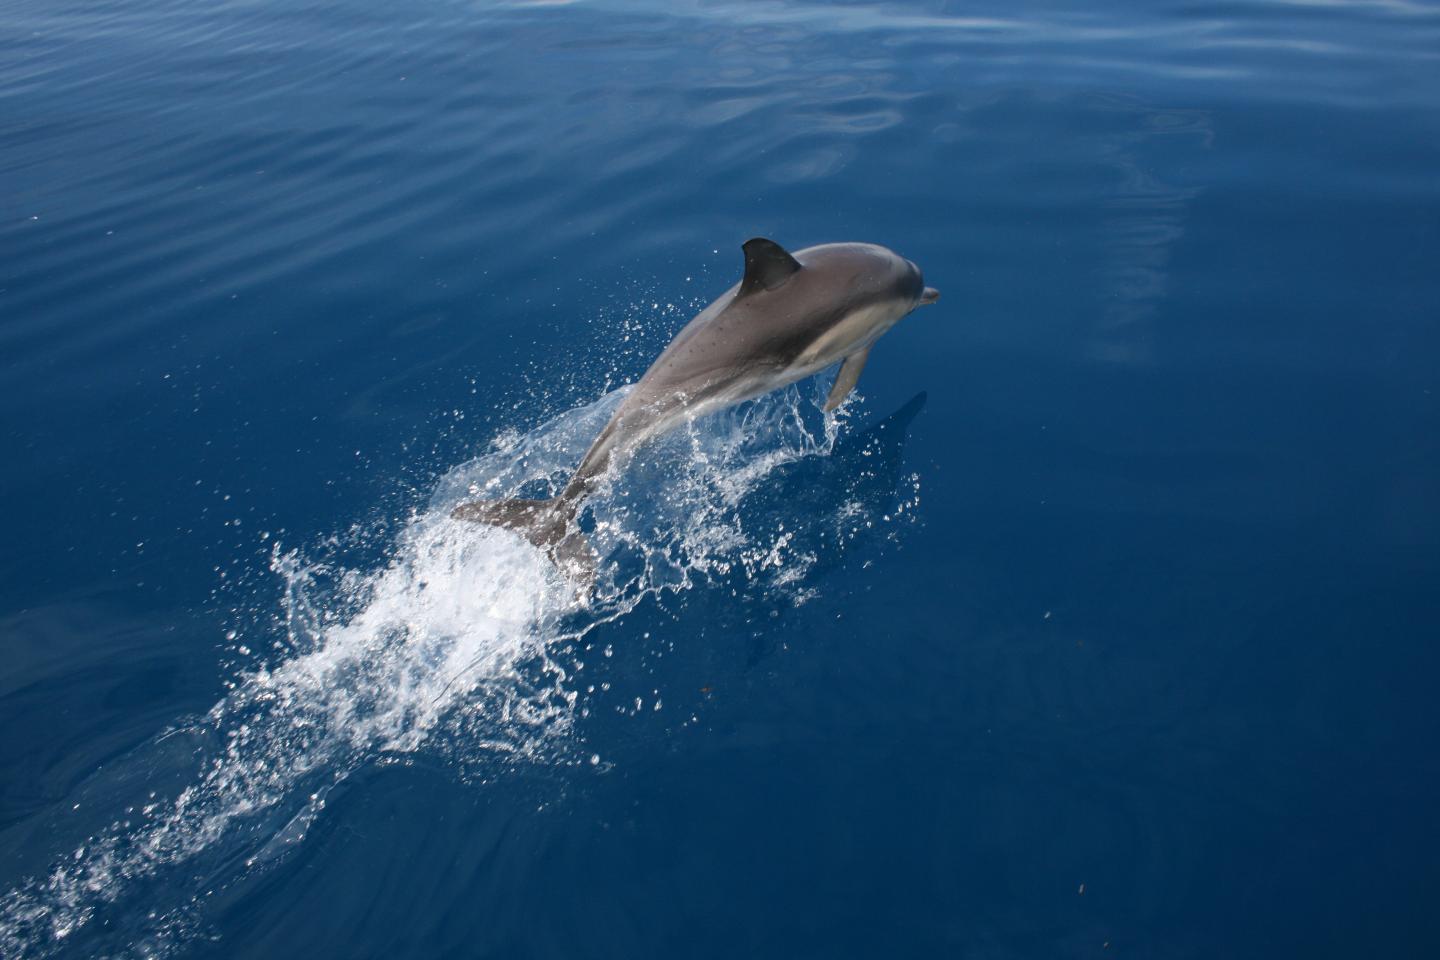 Australasian common dolphin